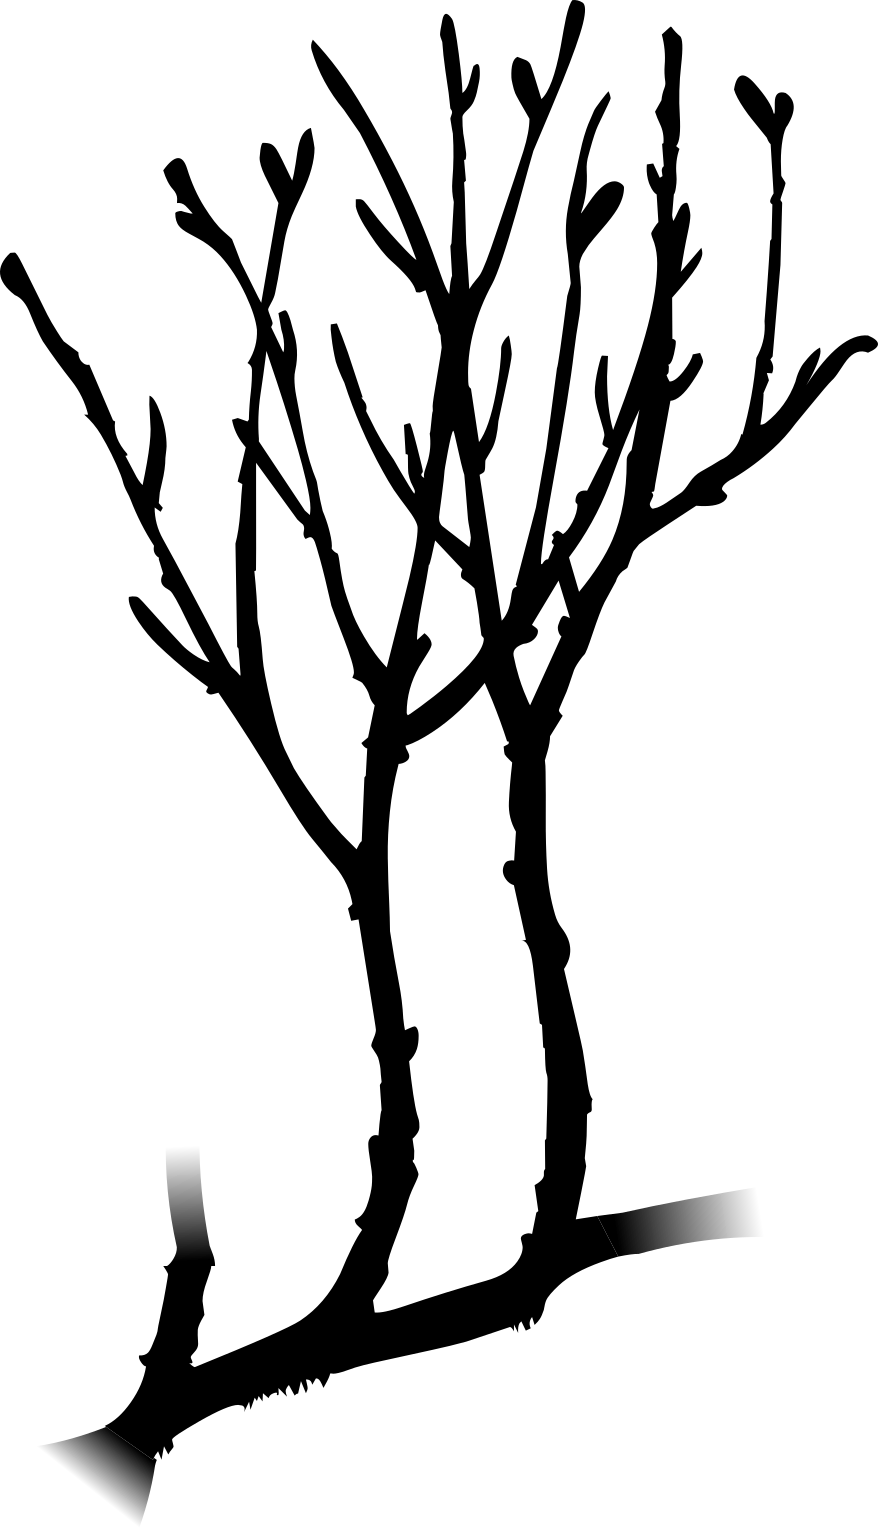 Rhynia gwynne-vaughanii